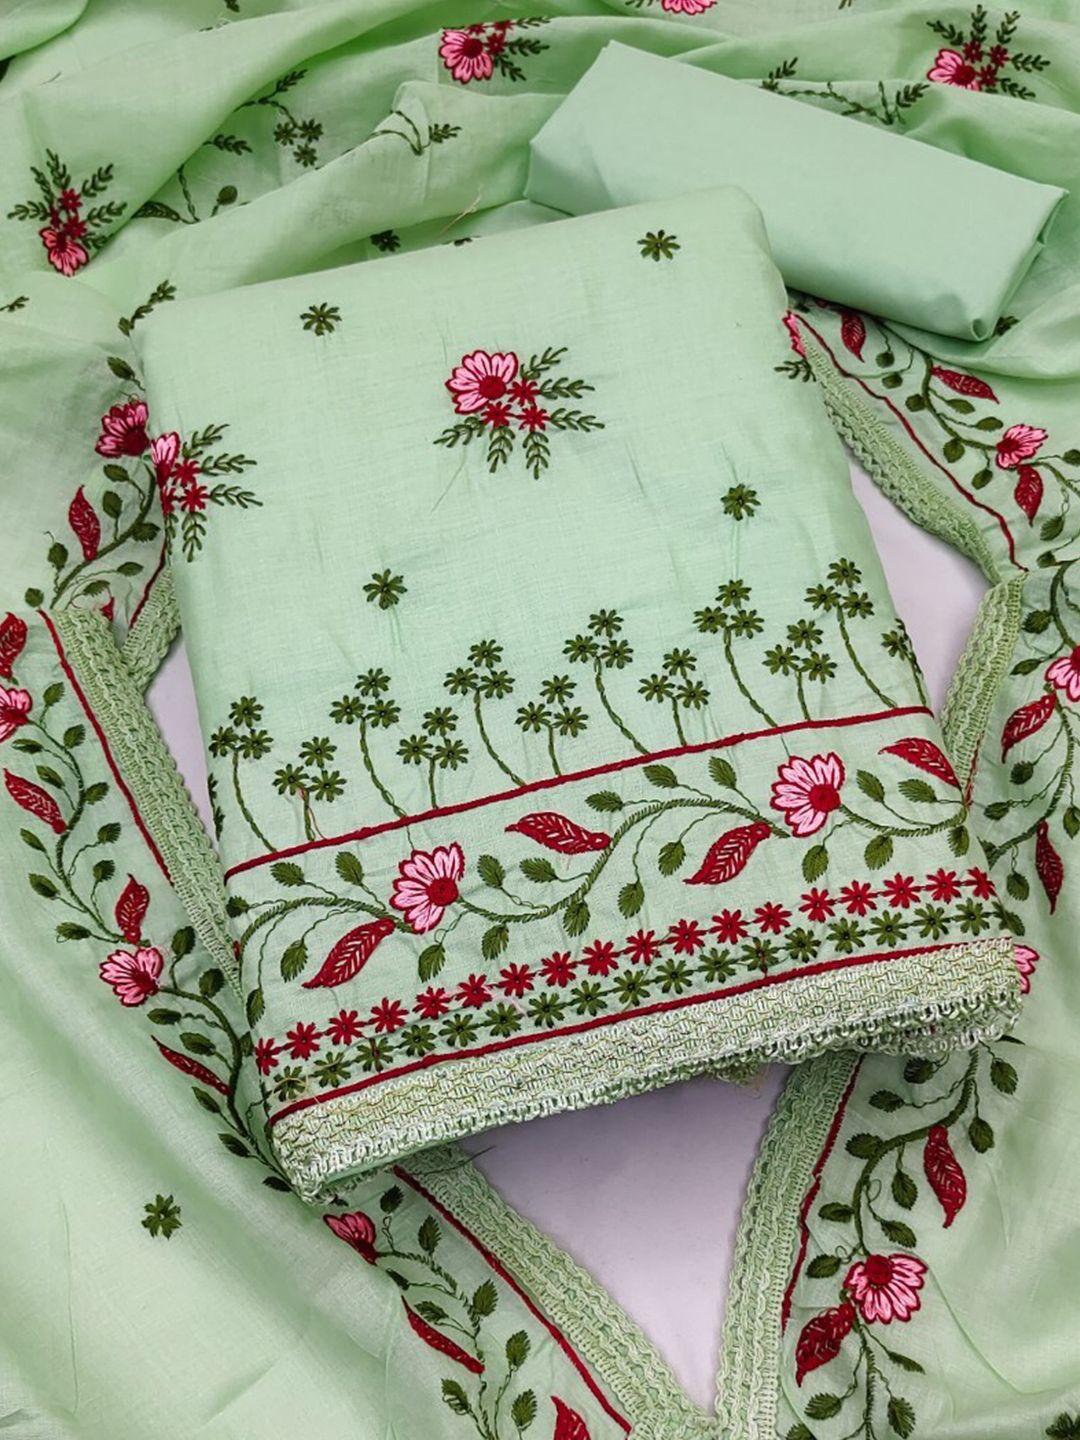 zeepkart green & pink unstitched dress material